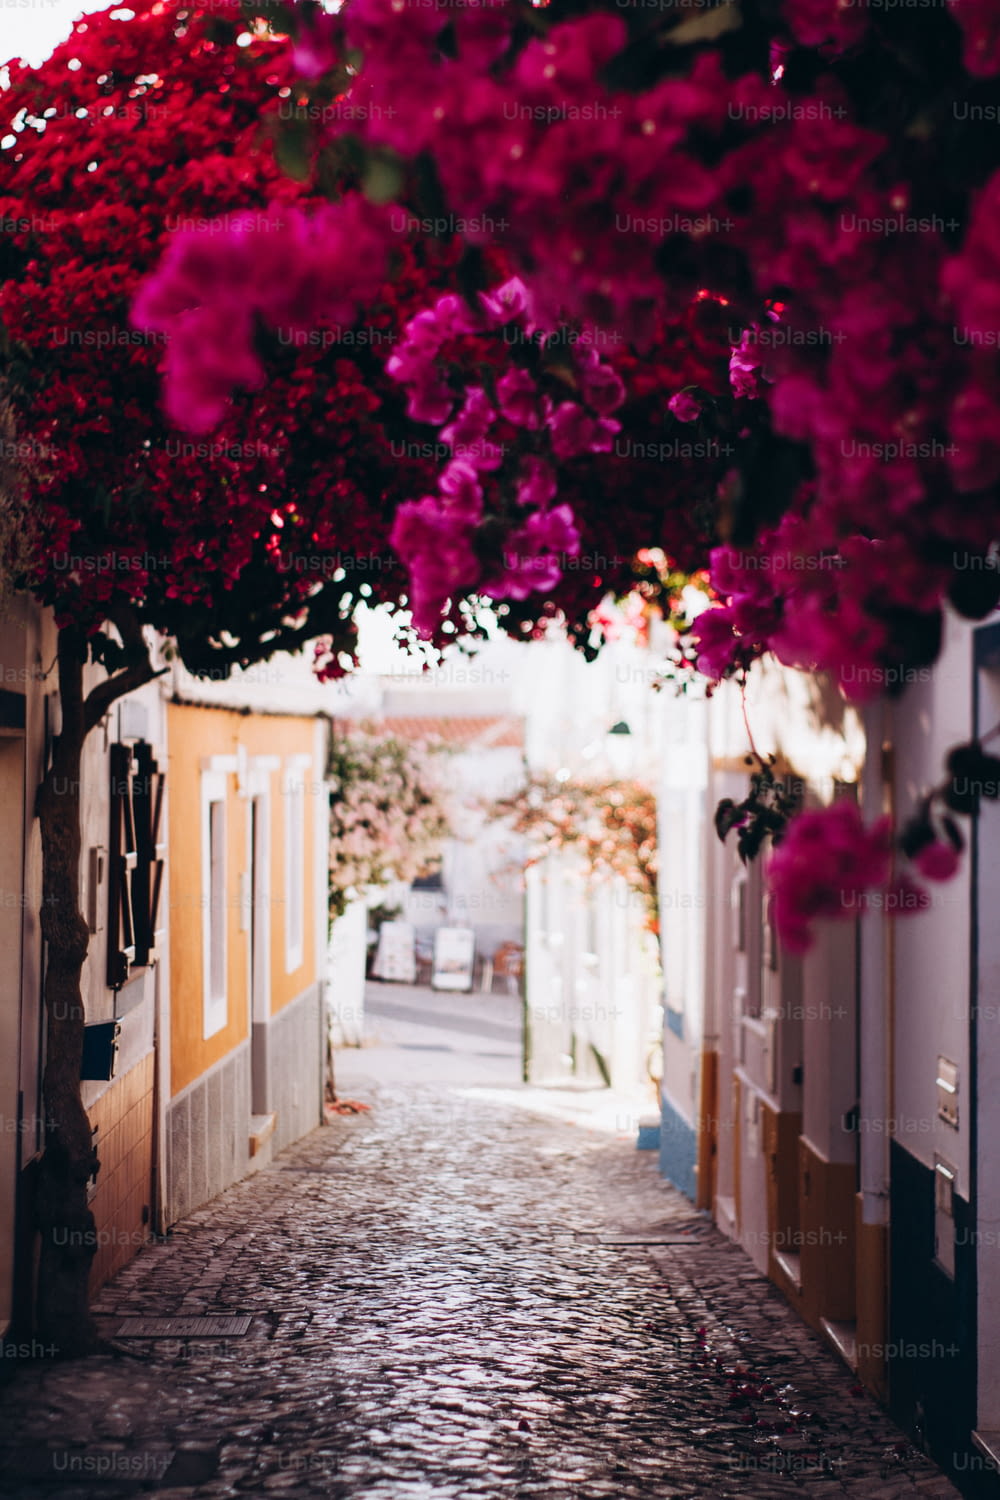 Eine schmale Straße, über der ein Blumenstrauß hängt